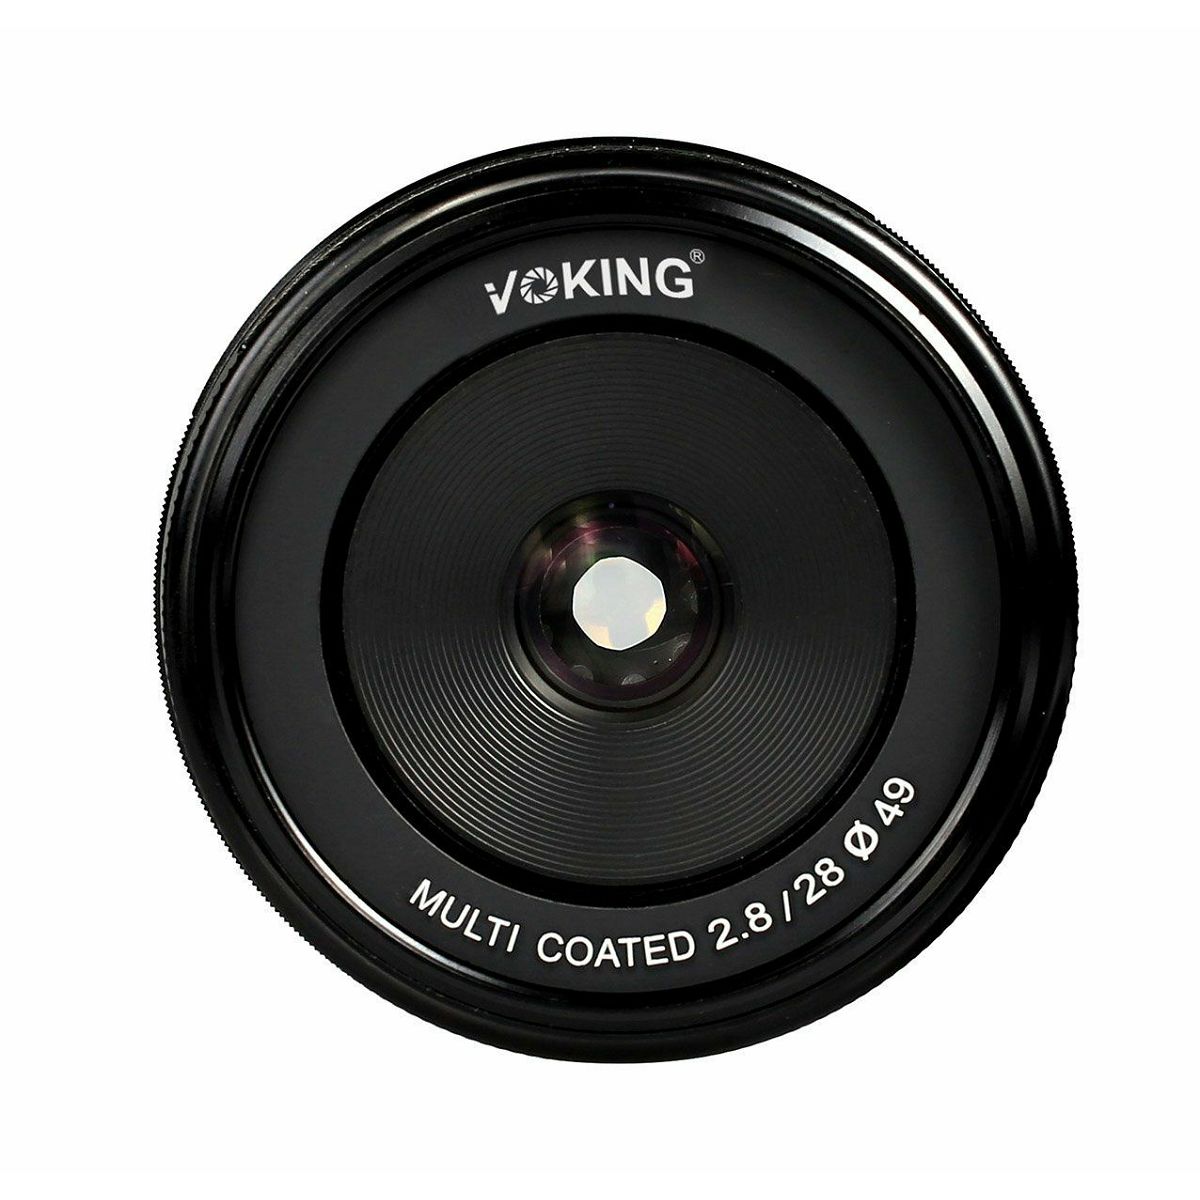 Voking 28mm F2.8 širokokutni objektiv za Panasonic/Olympus (VK28-2.8-MFT)